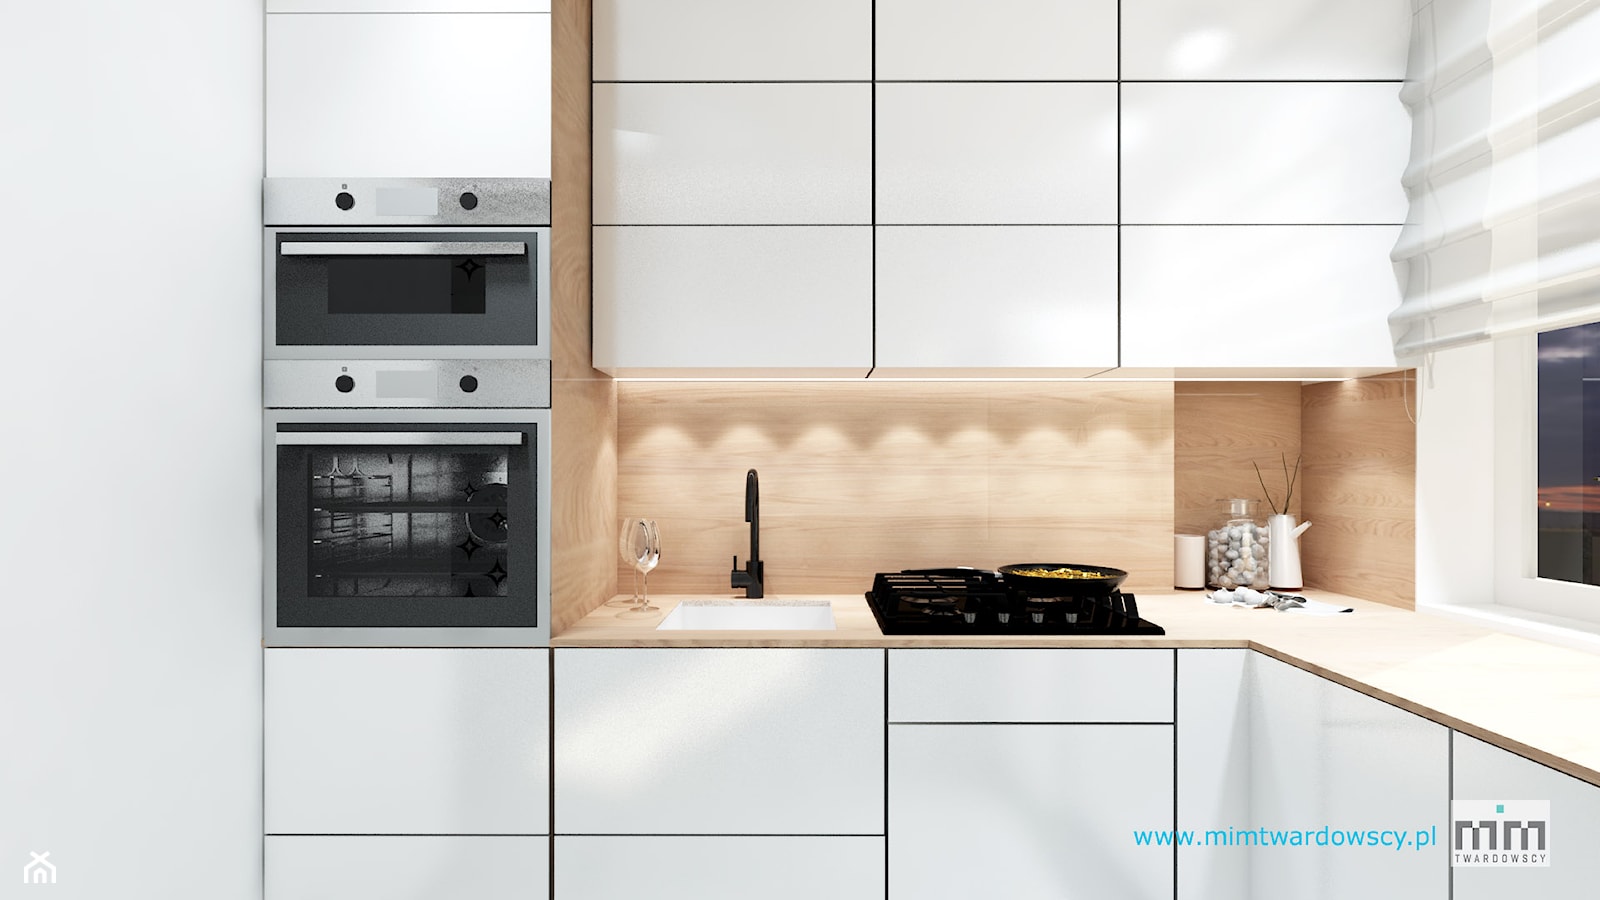 BED minimalizm ocieplony drewnem :) - Kuchnia, styl minimalistyczny - zdjęcie od mimtwardowscy - Homebook